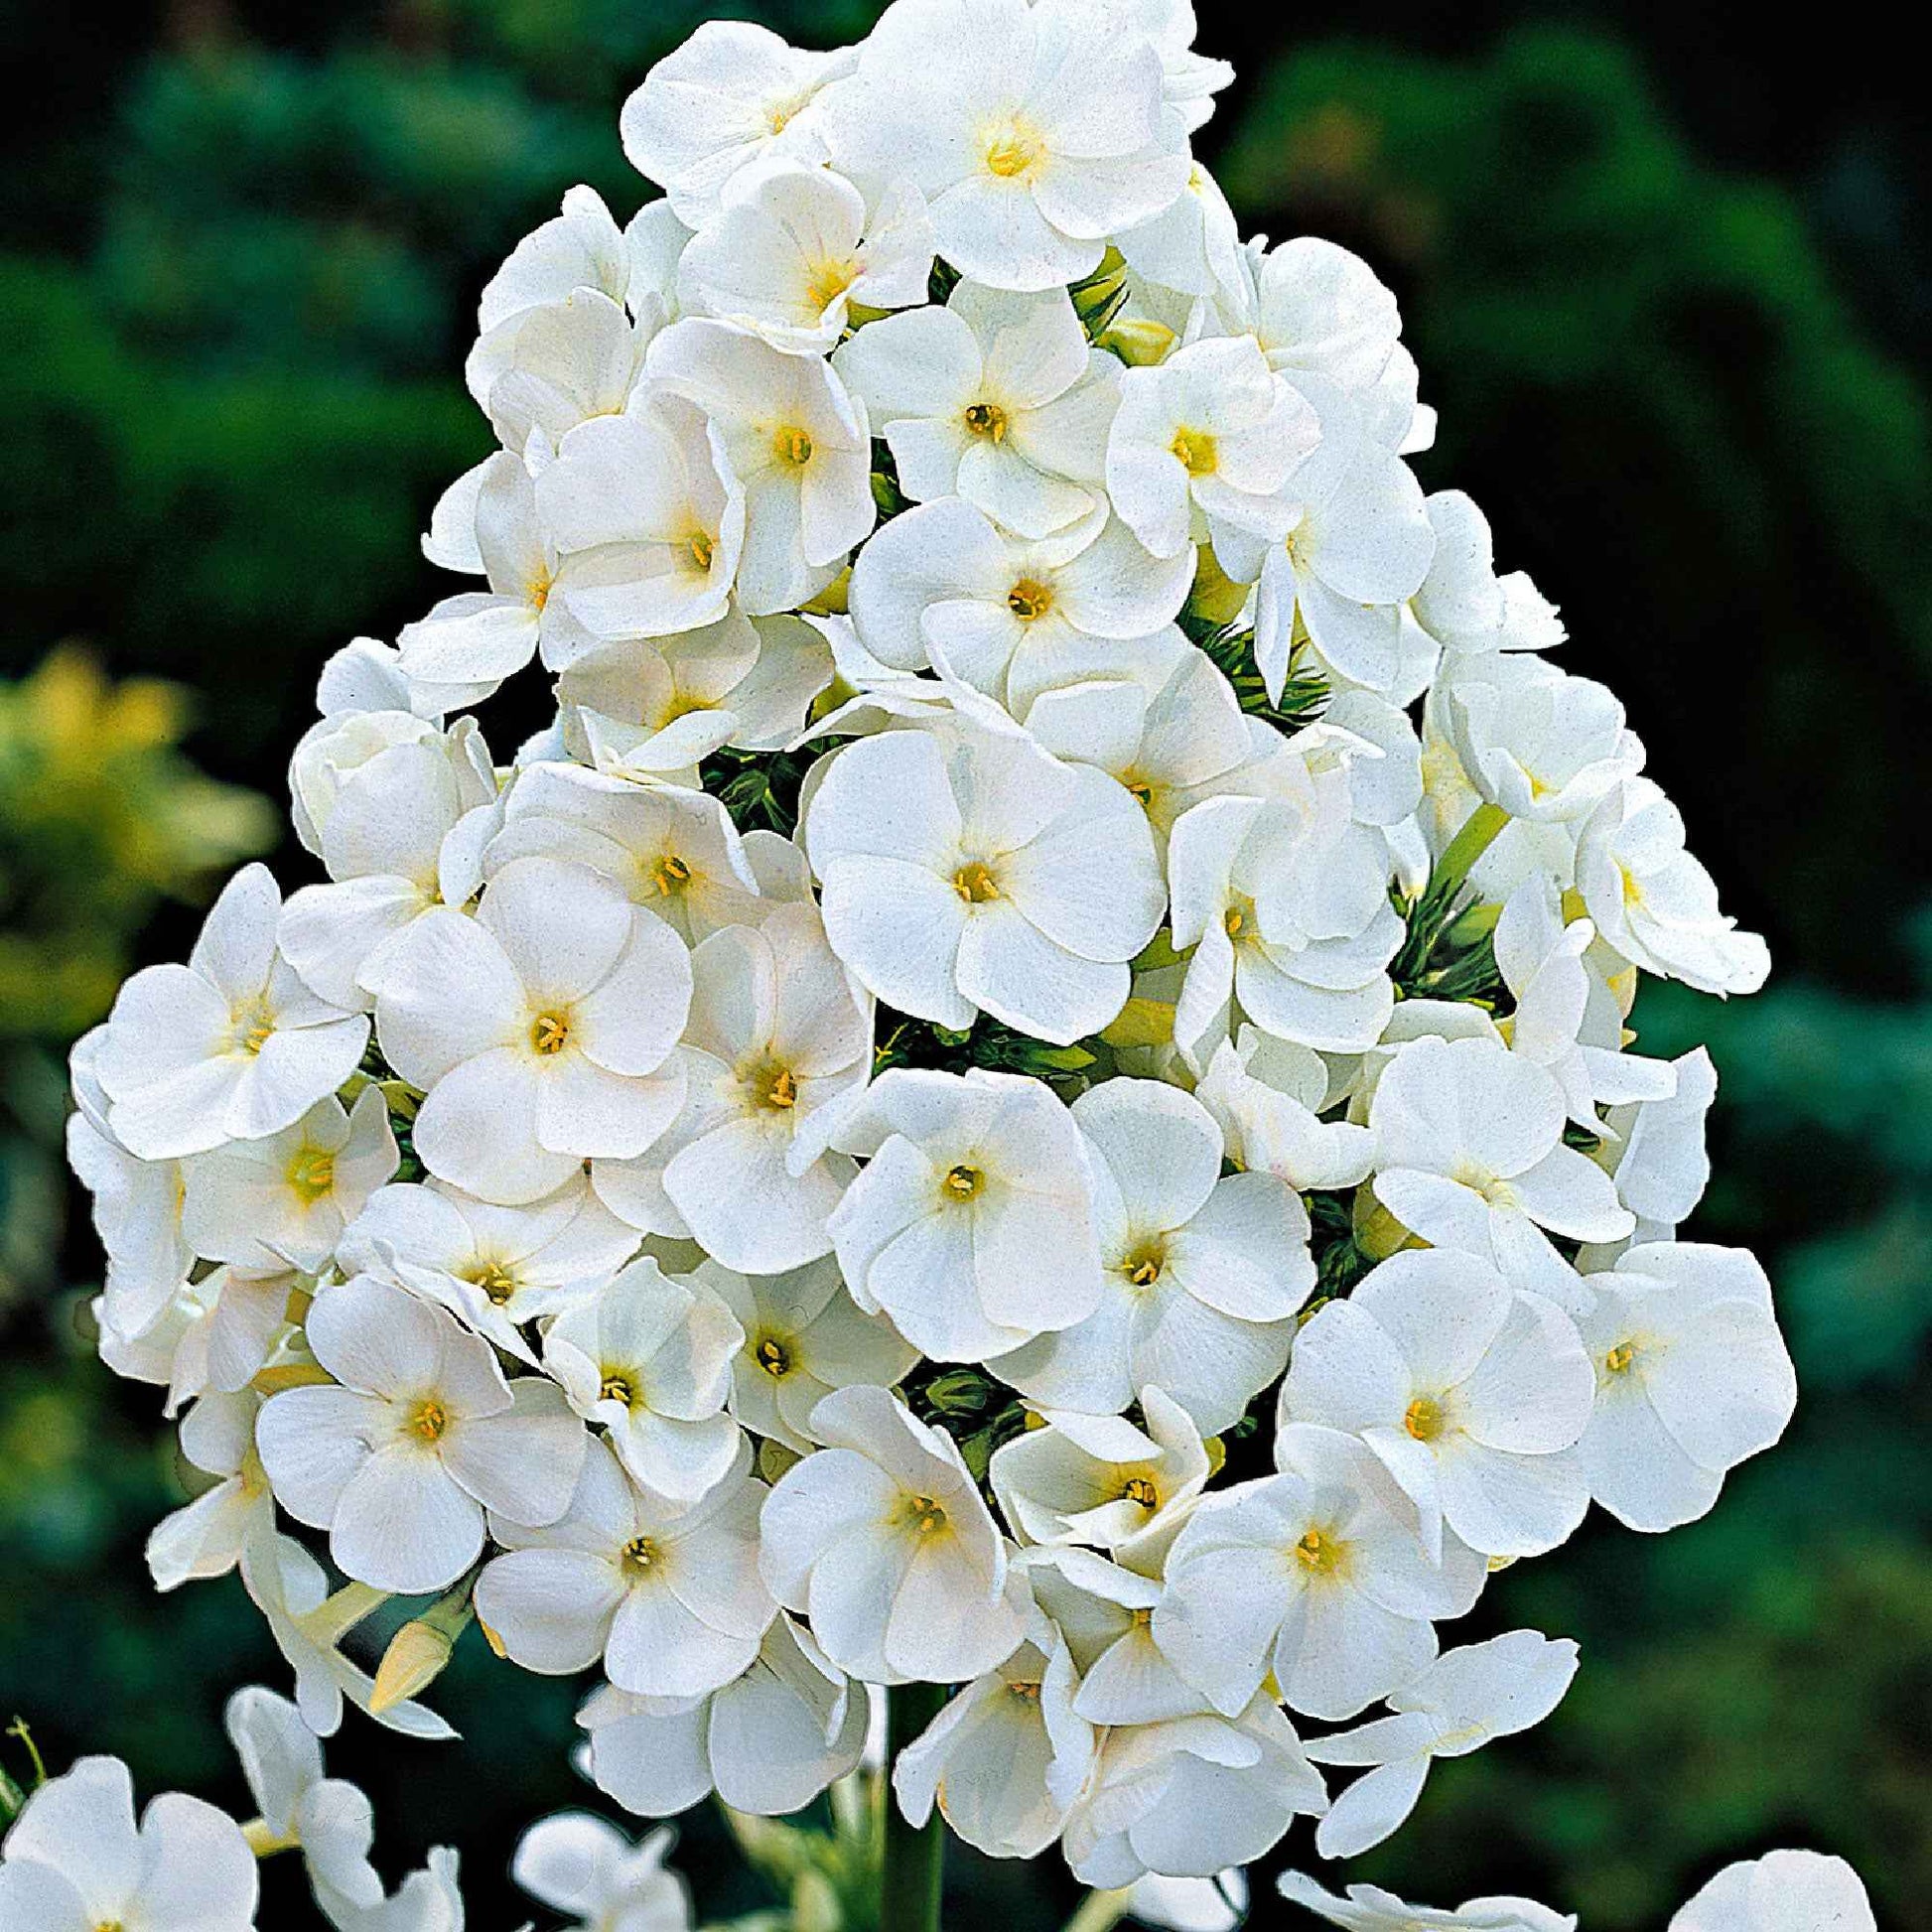 3x Flammenblume Phlox 'White Admiral' weiβ - Wurzelnackte Pflanzen - Winterhart - Bienen- und schmetterlingsfreundliche Pflanzen